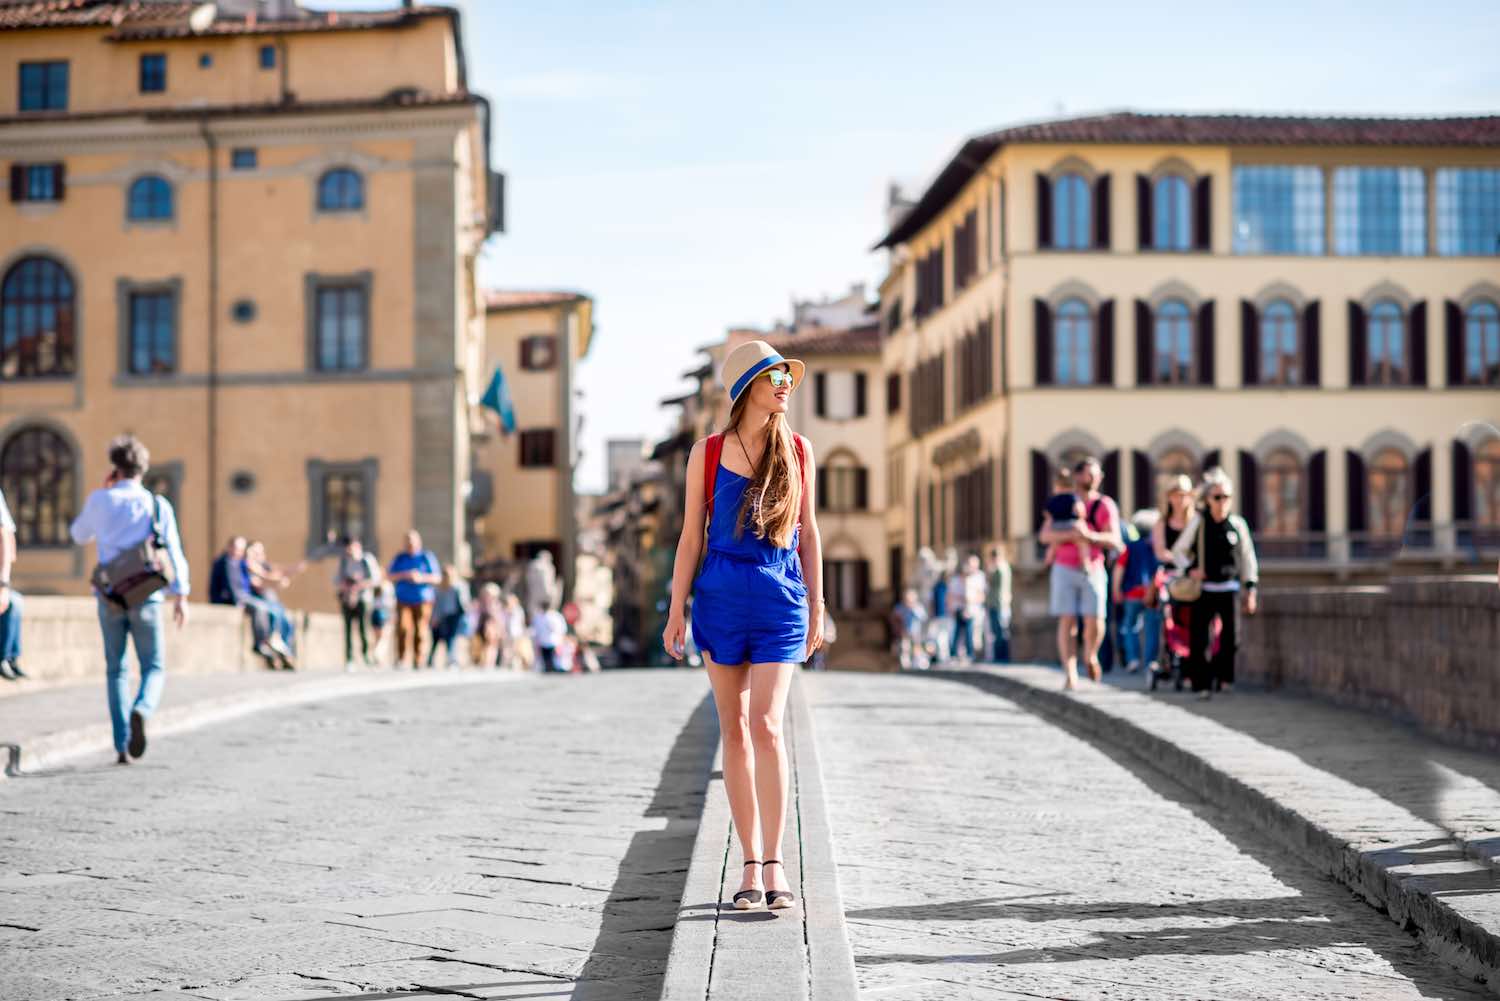 Sei un single a Firenze e non sai cosa fare? Ecco qualche consiglio da esperti per goderti la vita da lupo solitario nella città toscana